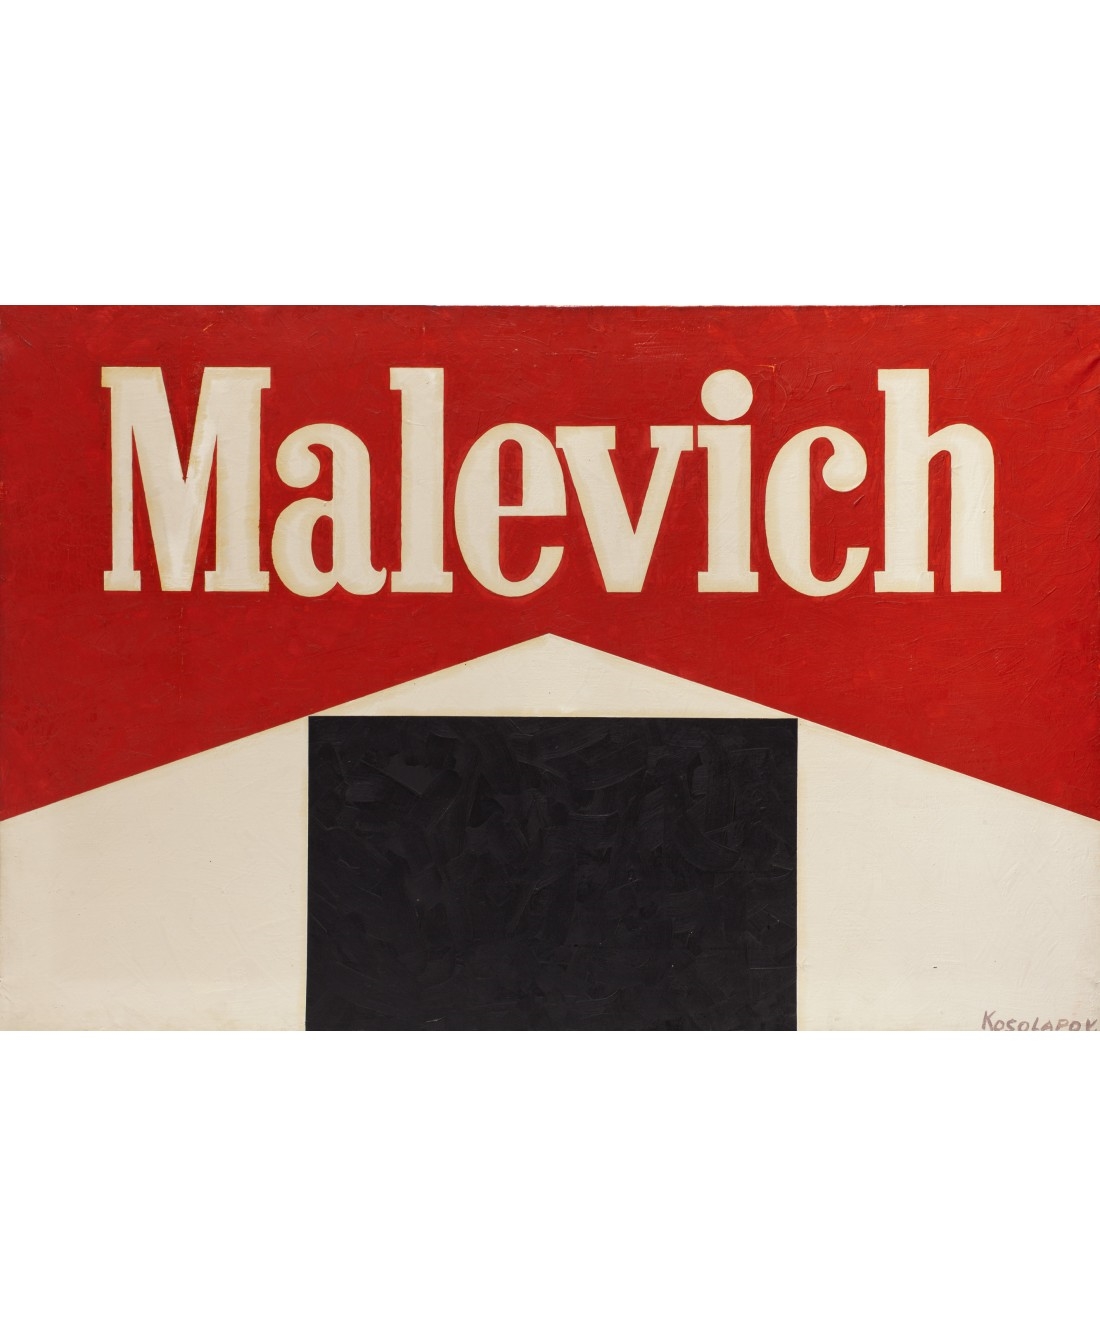 Malevich by Alexander Kosolapov, 1989